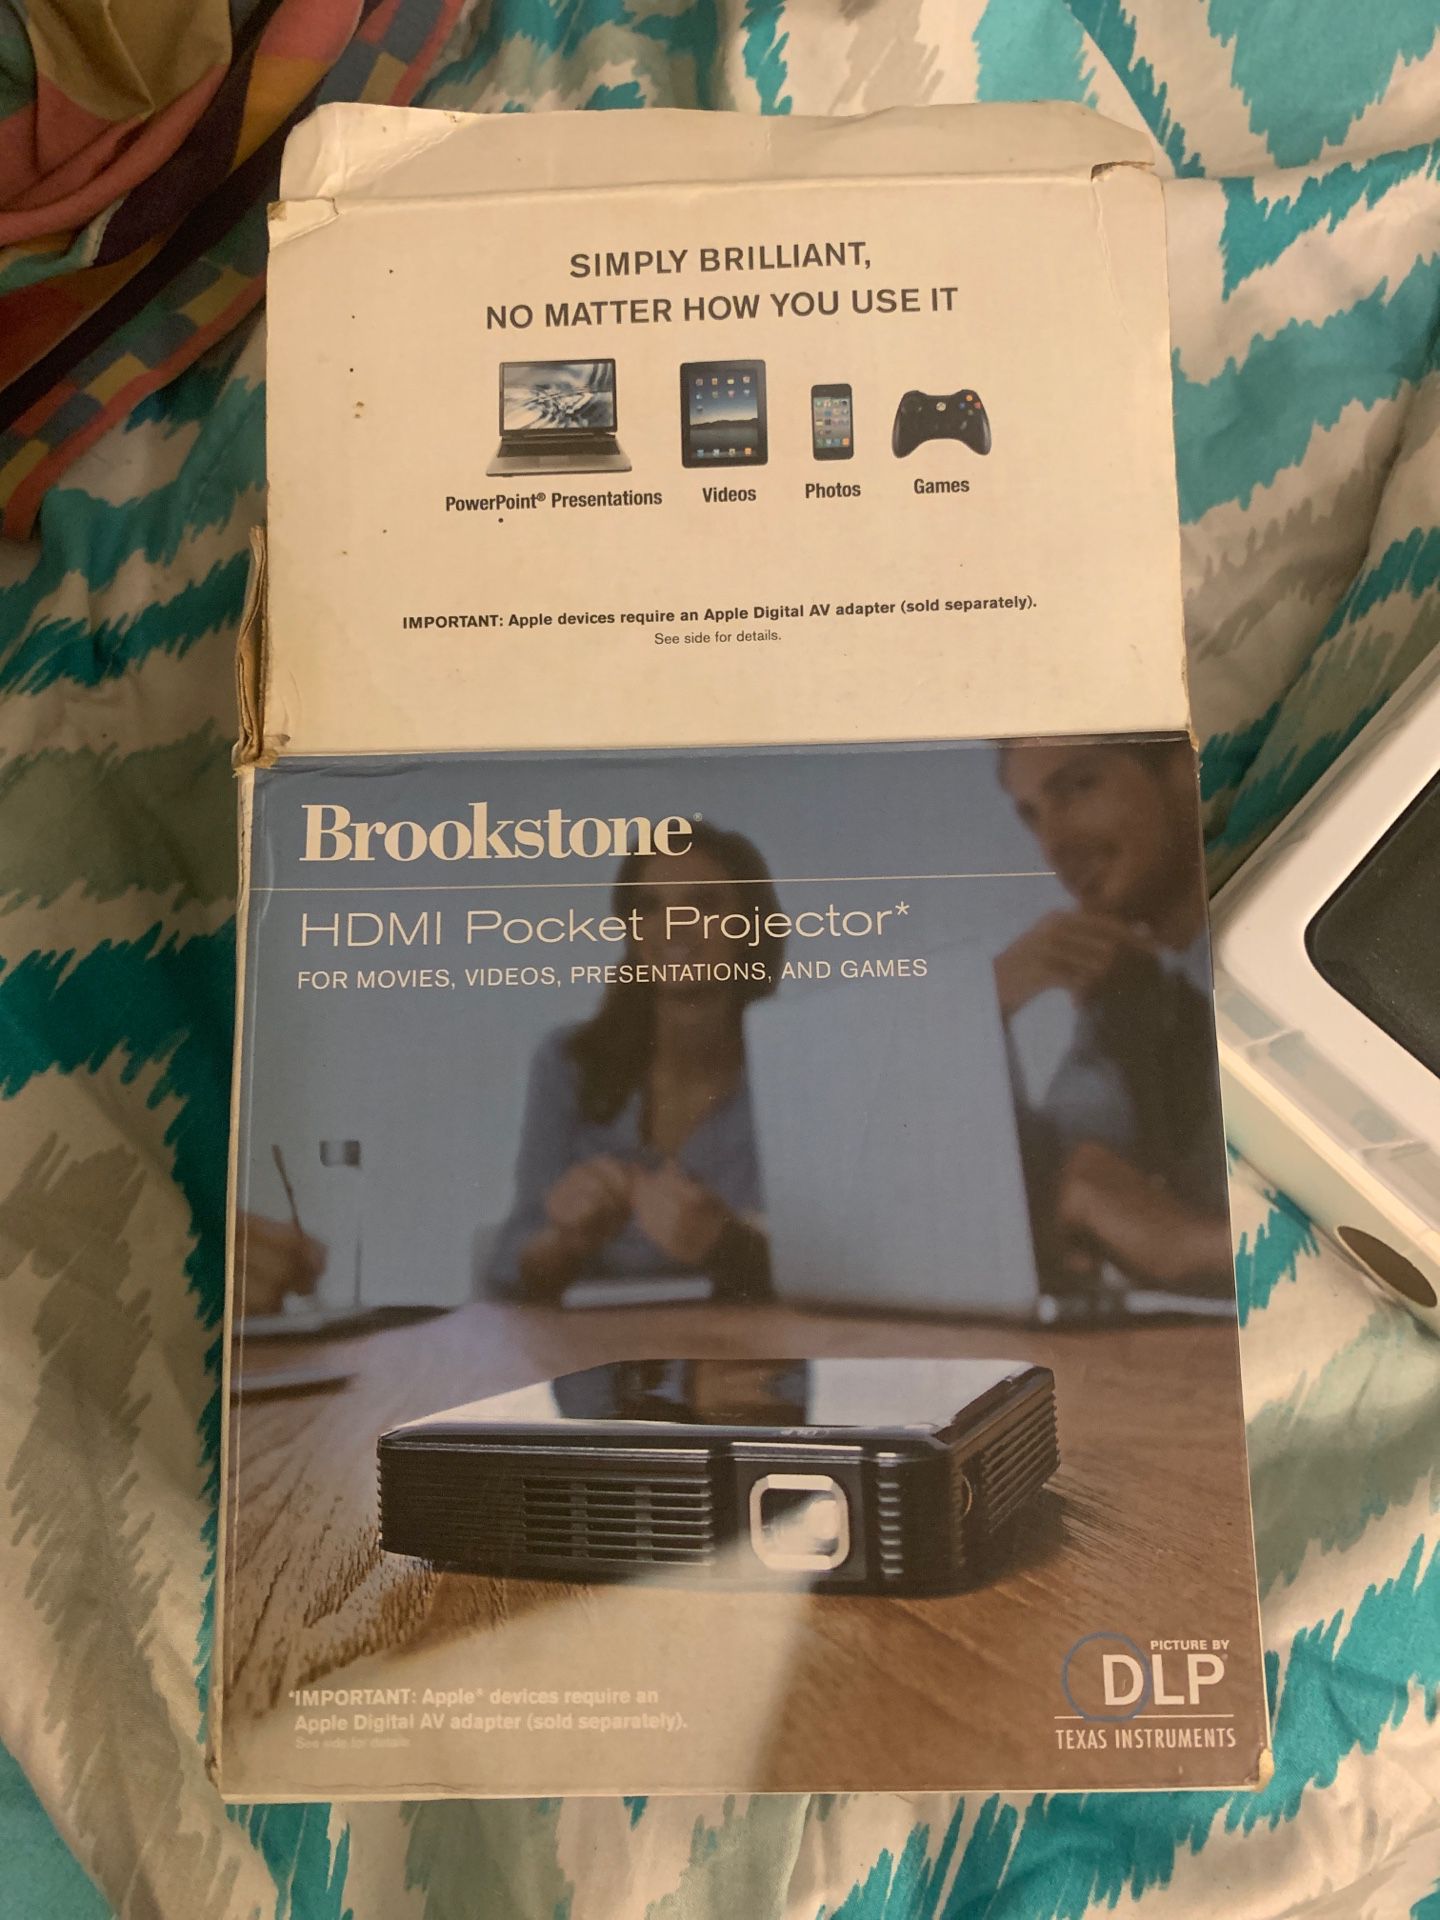 HDMI pocket projector